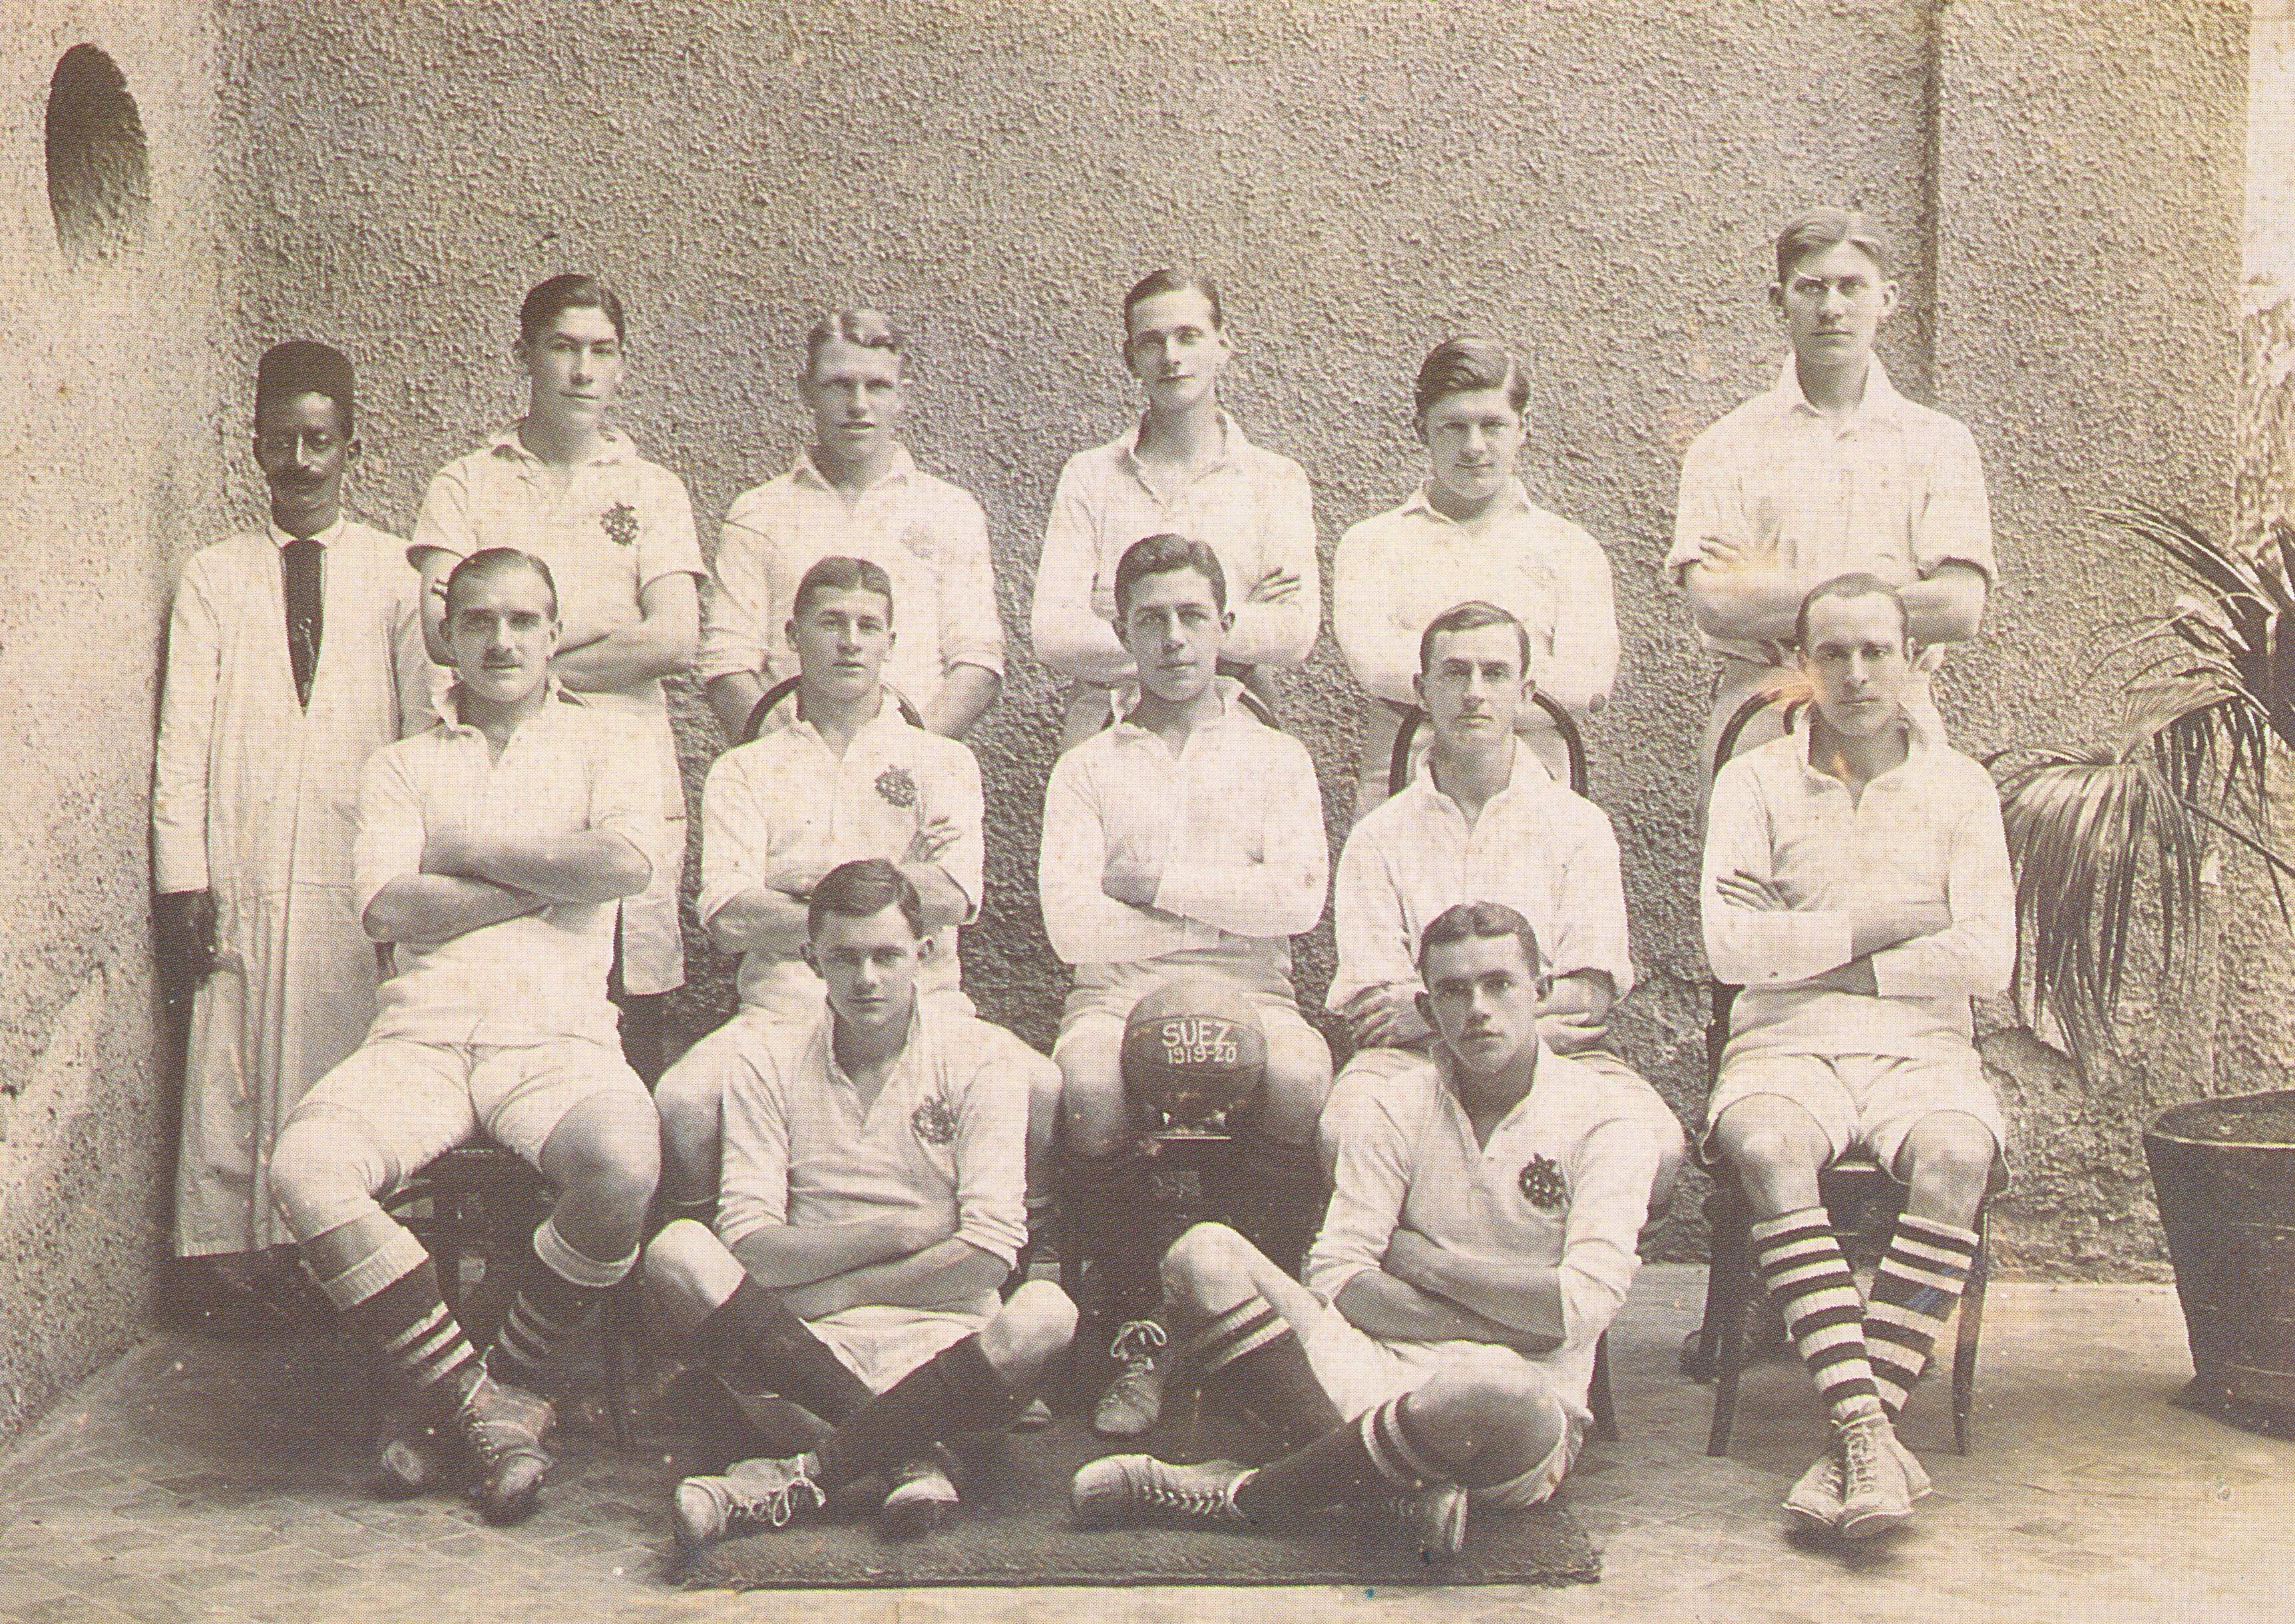 1920 Eastern Telco Suez  football team